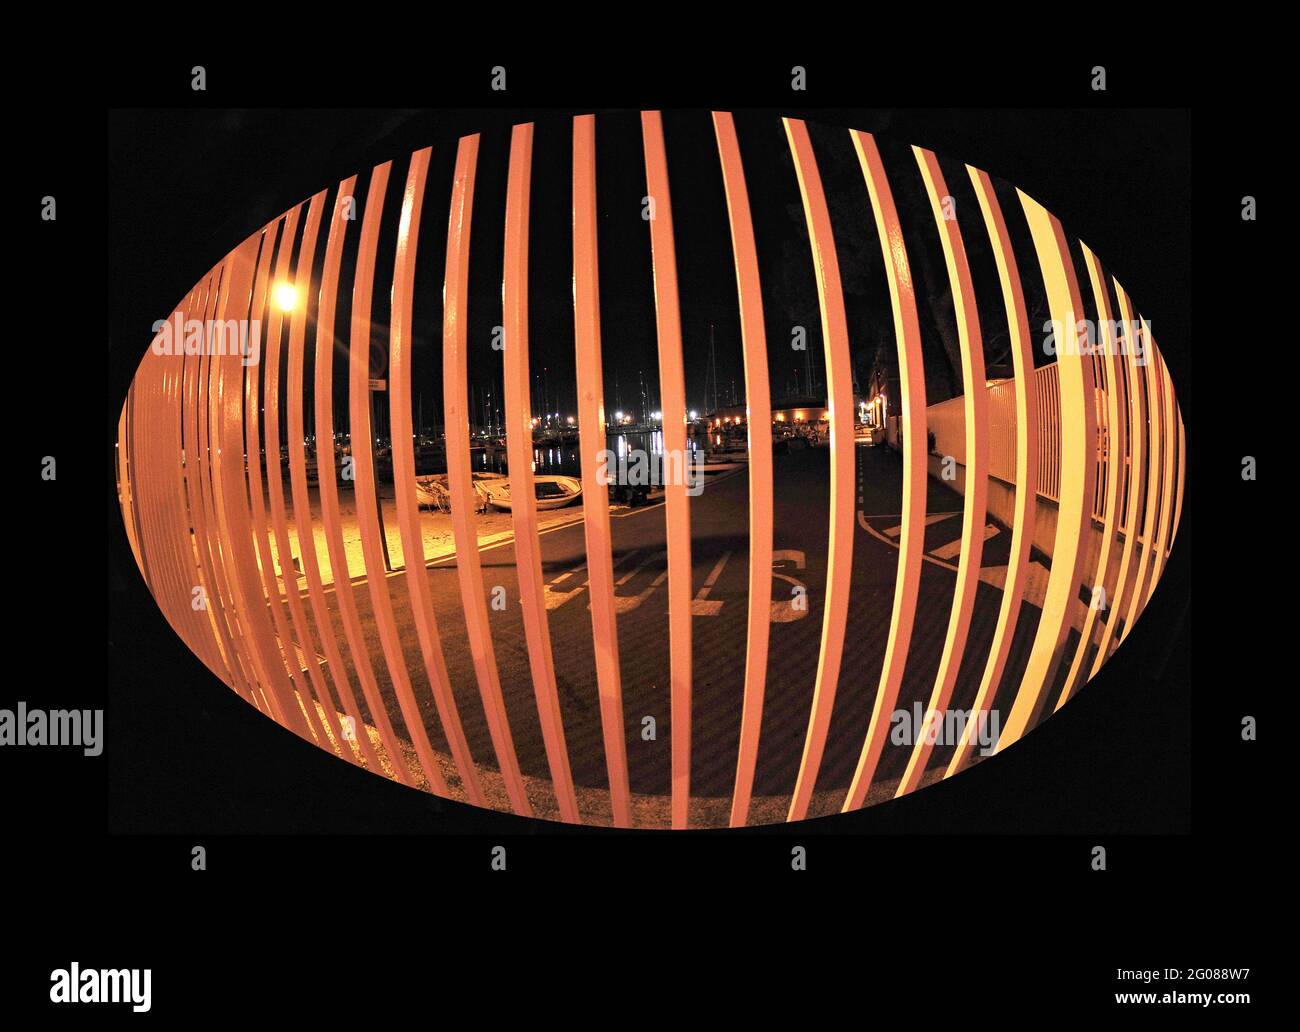 Cancellata fotografata con un fisheye e tagliata a forma ovale Banque D'Images